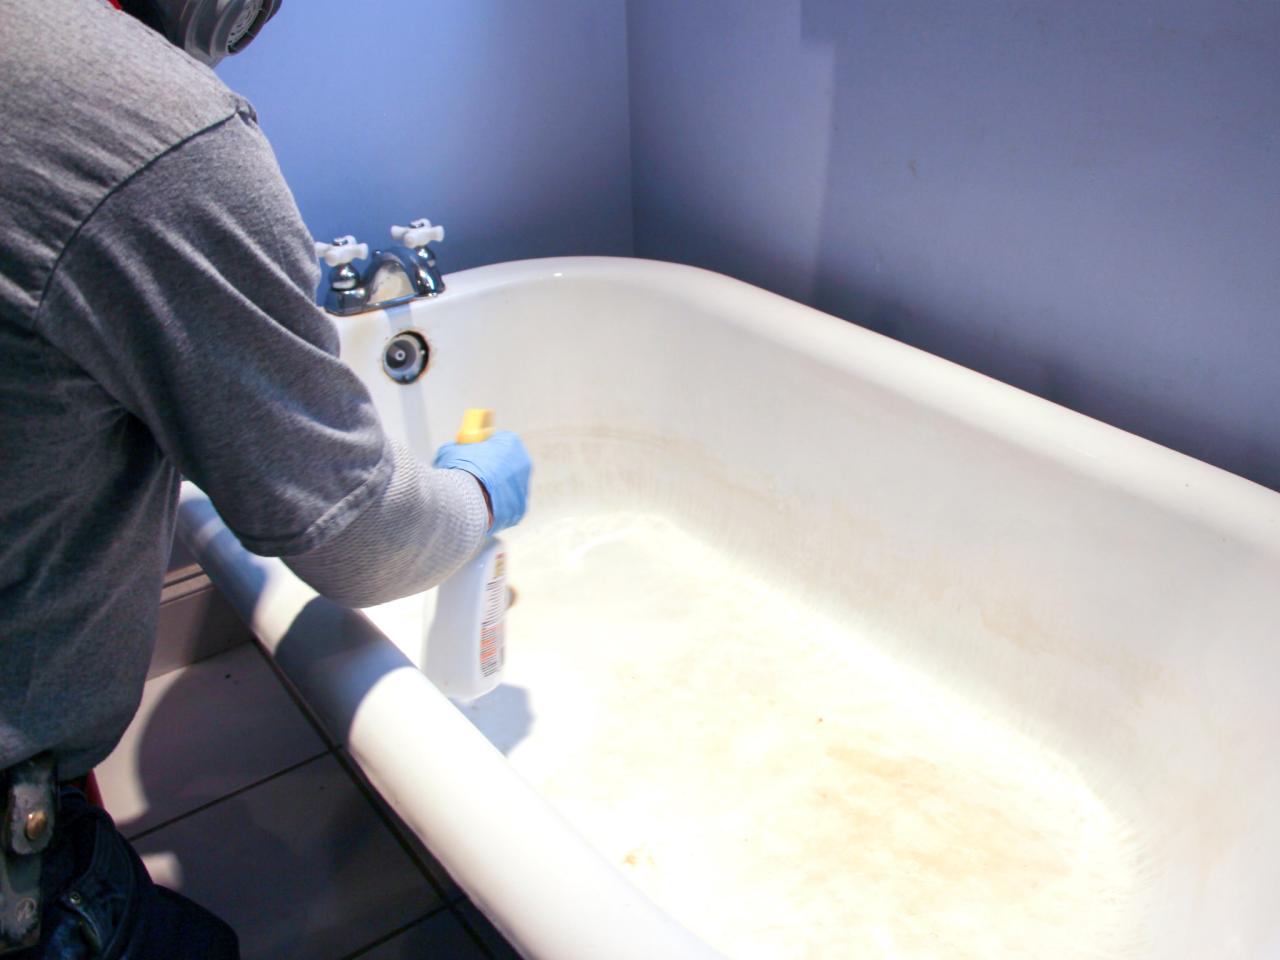 How To Refinish A Bathtub Tos Diy, Resurfacing A Bathtub Do It Yourself